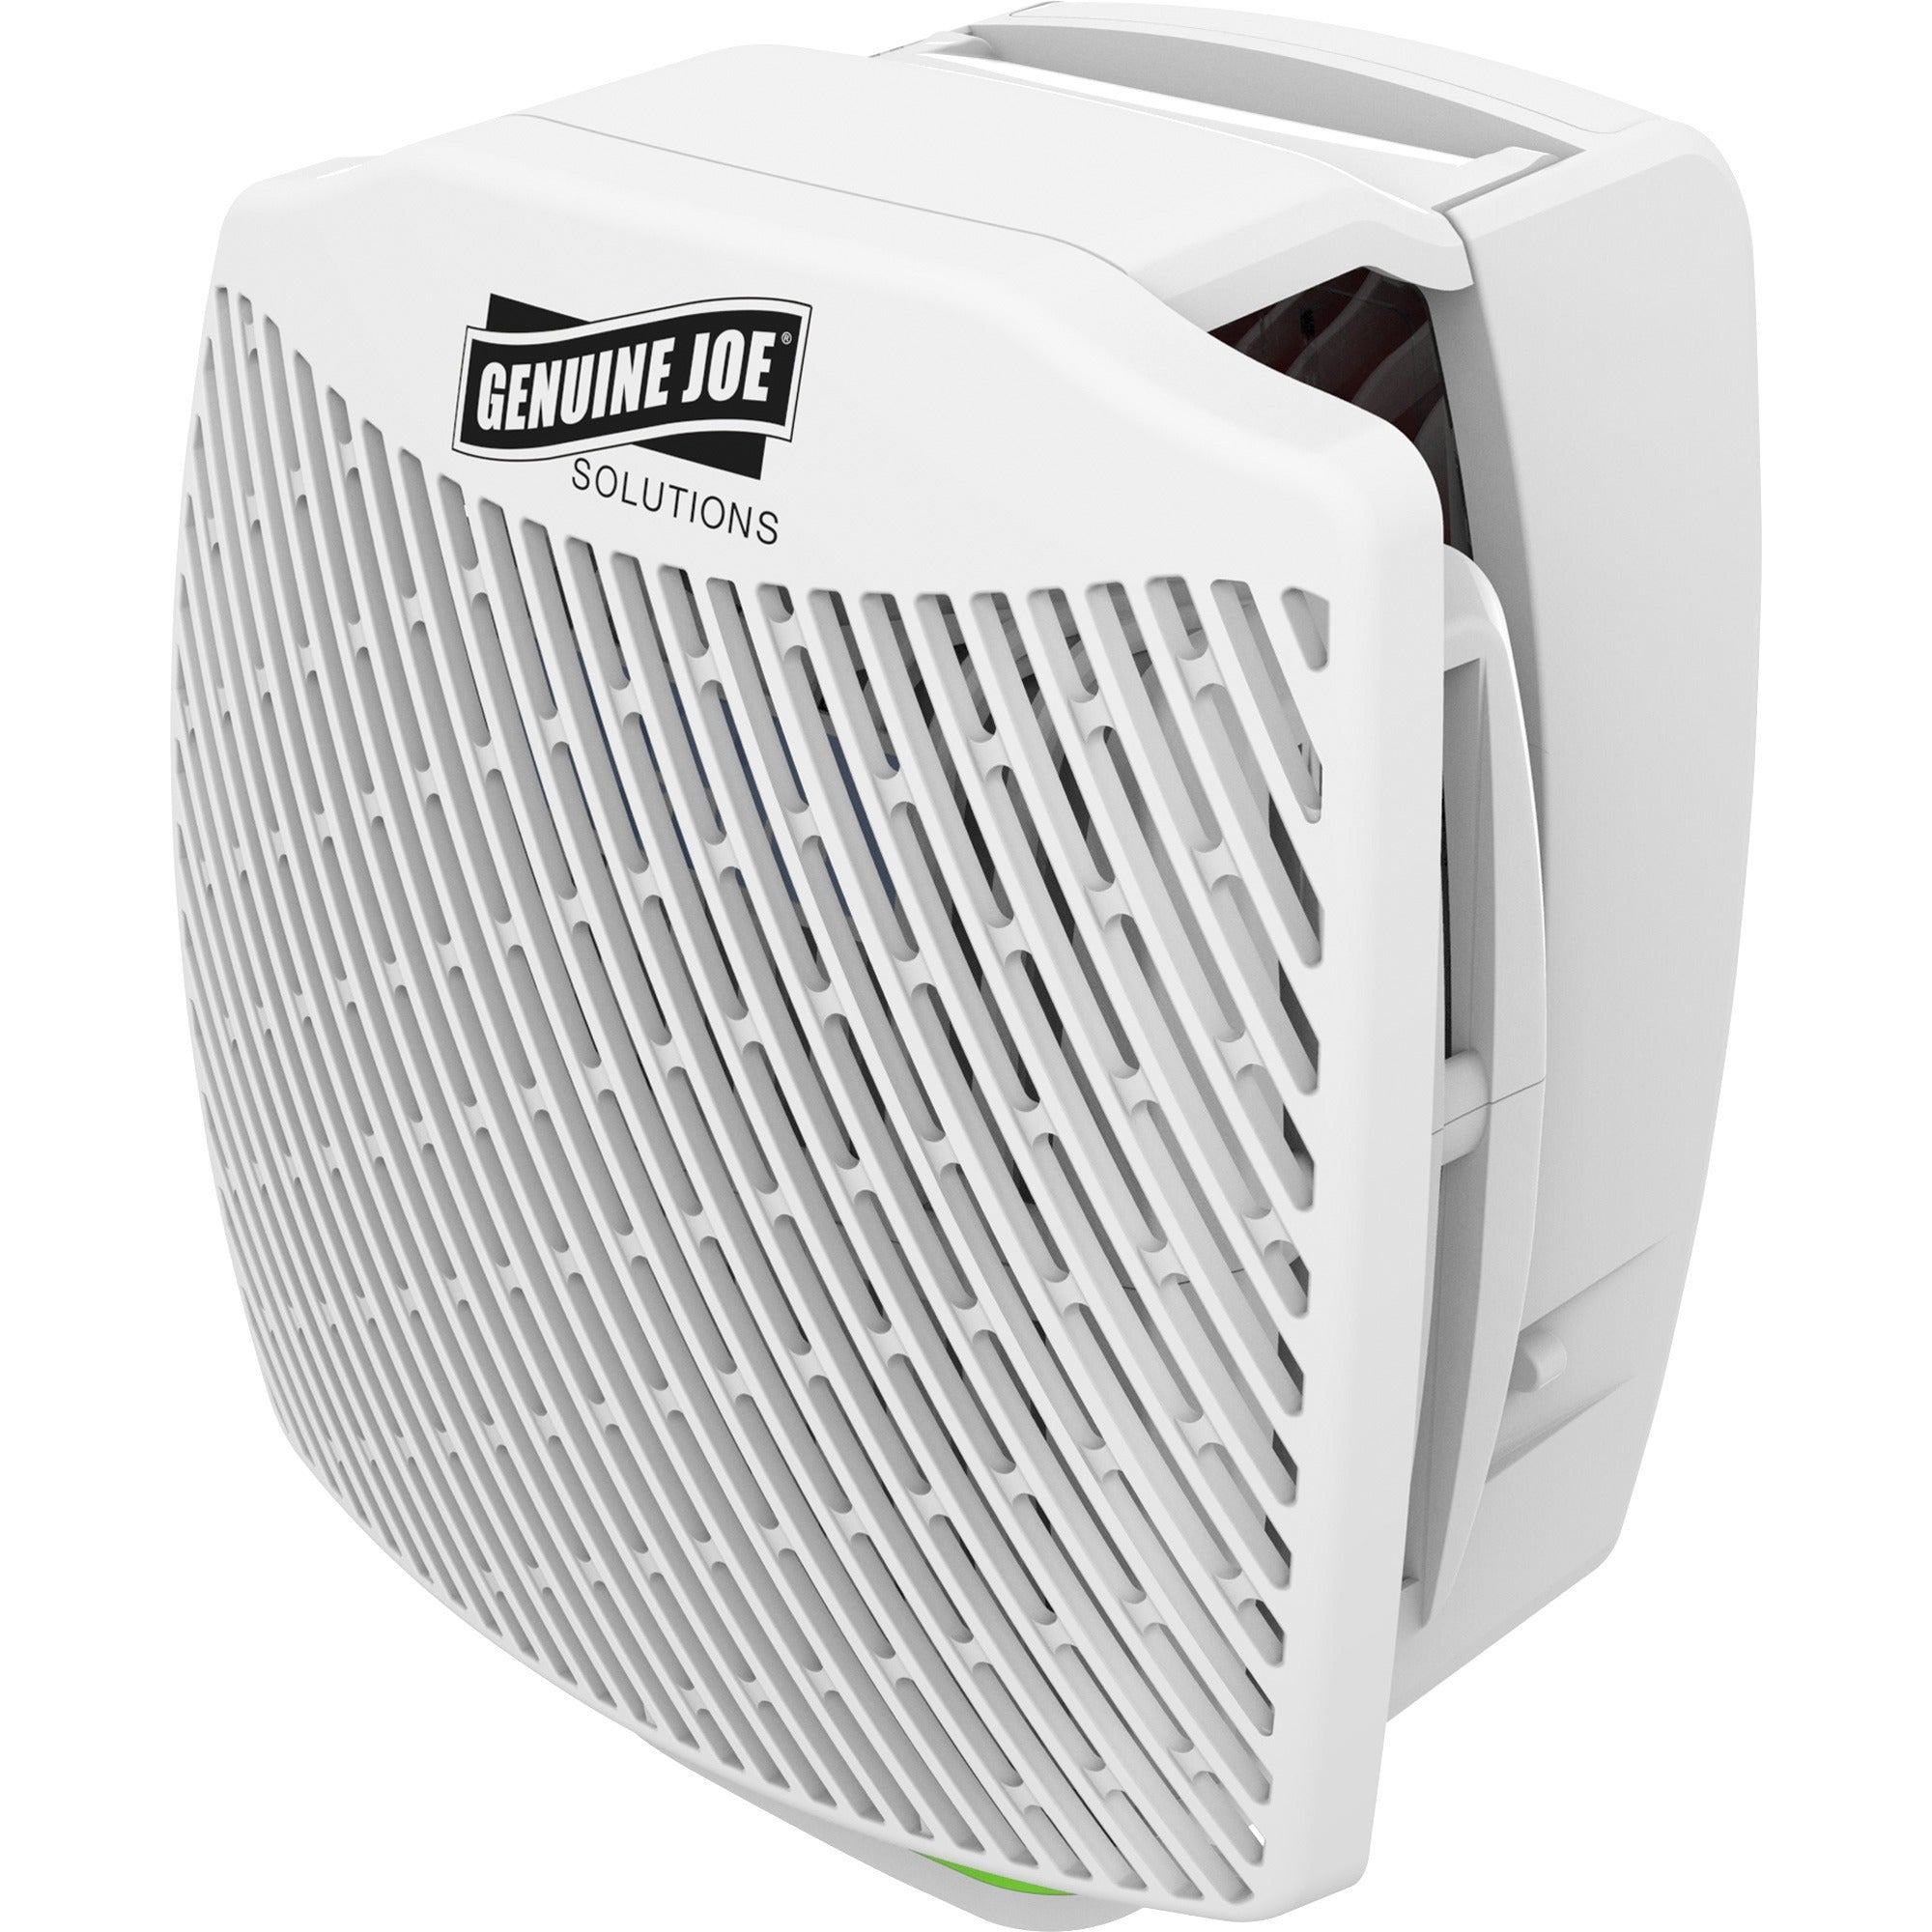 Genuine Joe Air Freshener Dispenser System - 30 Day Refill Life - 6000 ft Coverage - 6 / Carton - White - 3